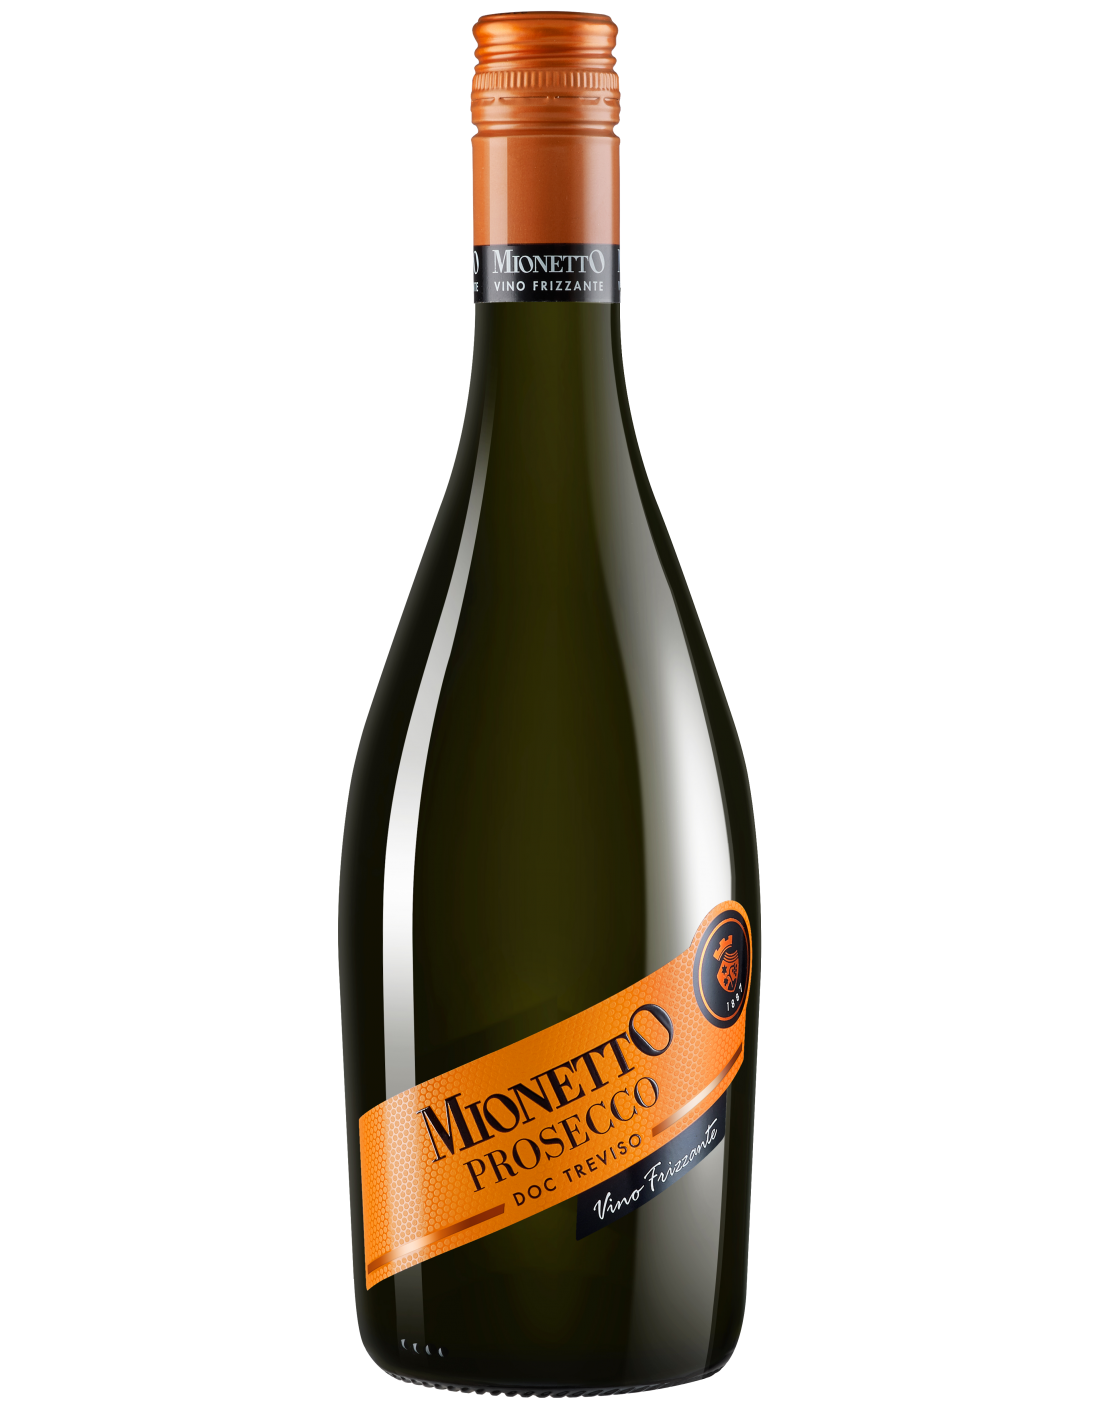 Vin frizzante, Mionetto Prosecco Brut, 11% alc., 0.75L, Italia alcooldiscount.ro